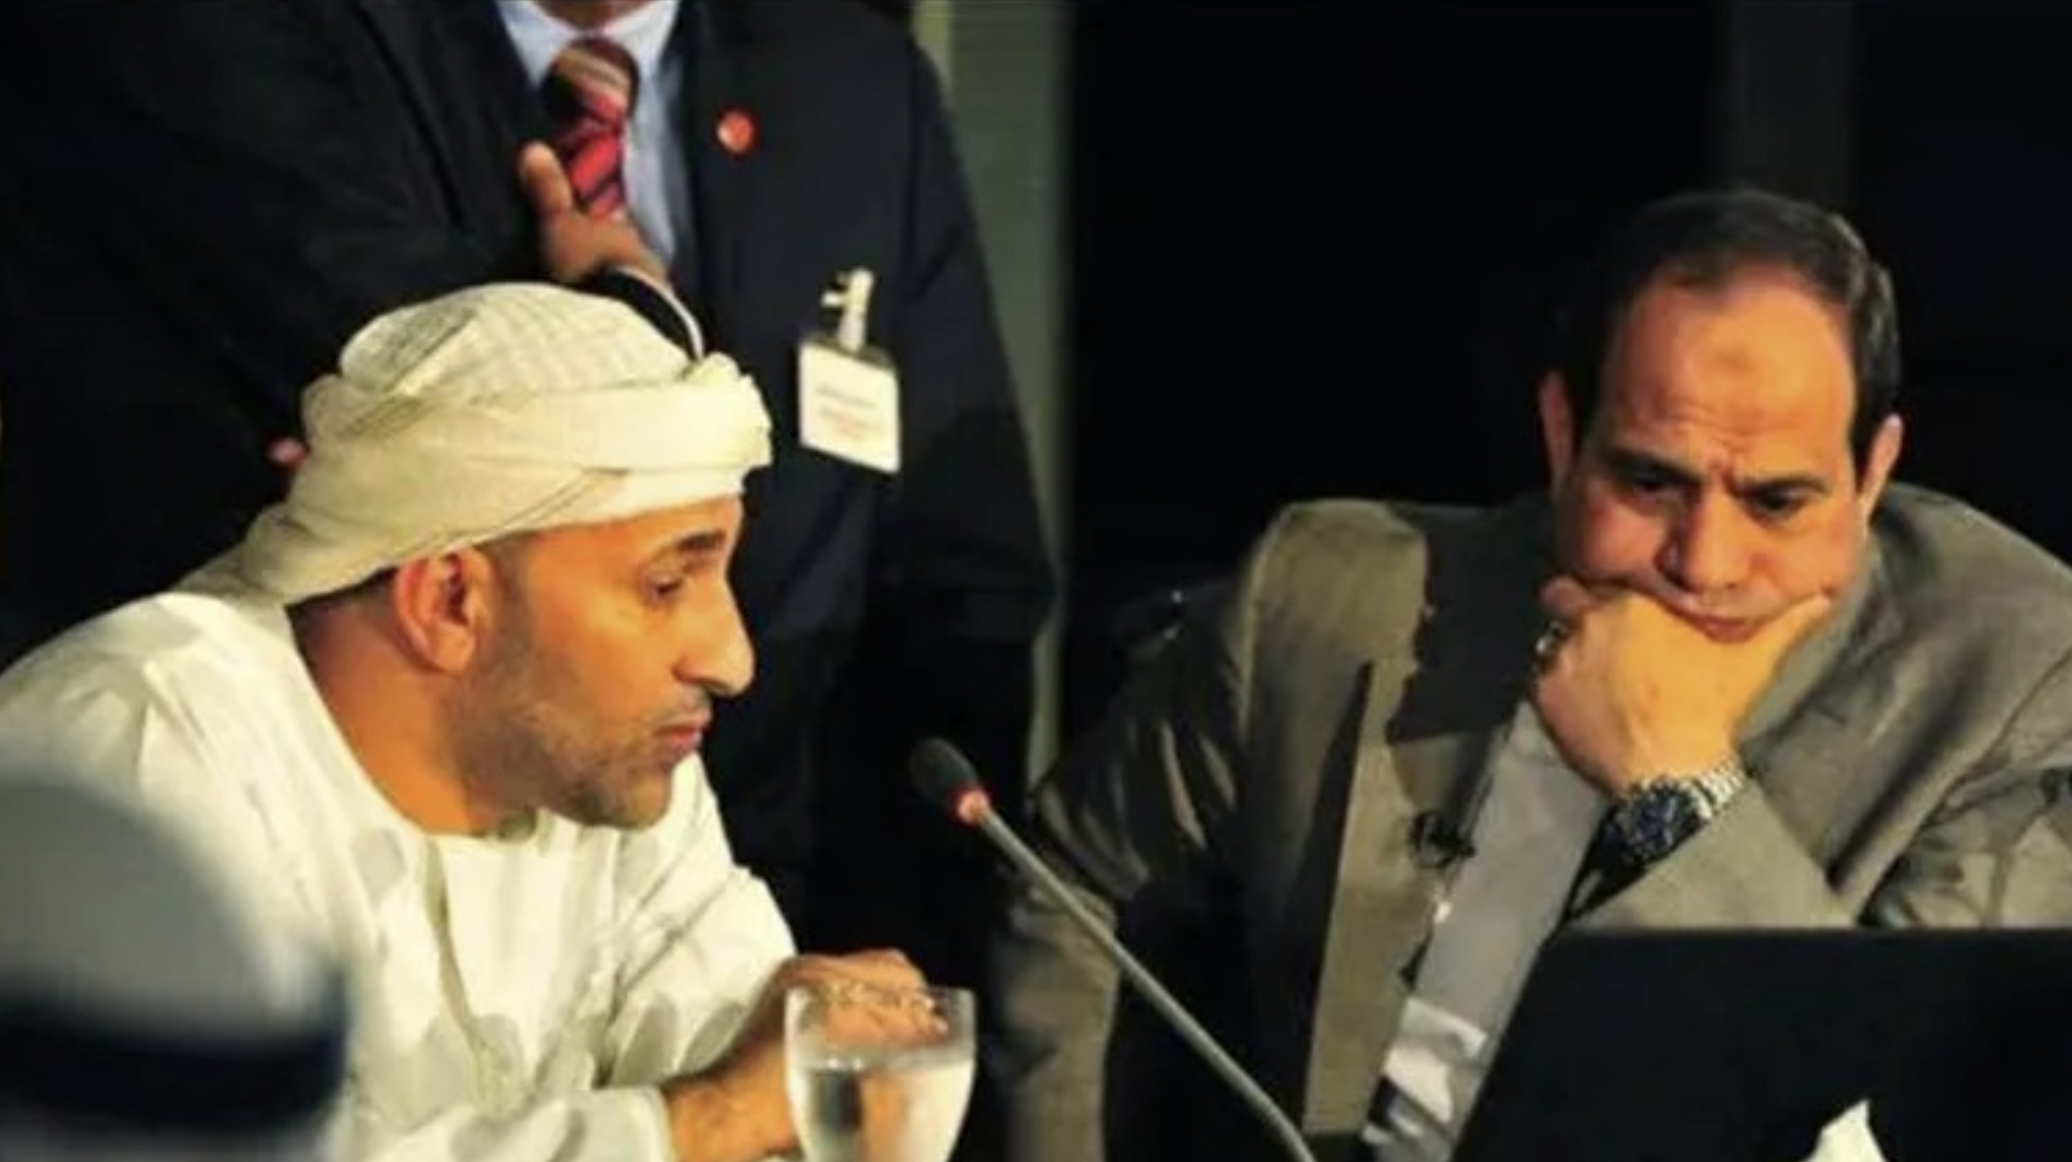 Ibrahim al-Arjani, a la izquierda, presenta sus ideas al presidente el-Sisi de Egipto durante una campaña electoral en mayo de 2014